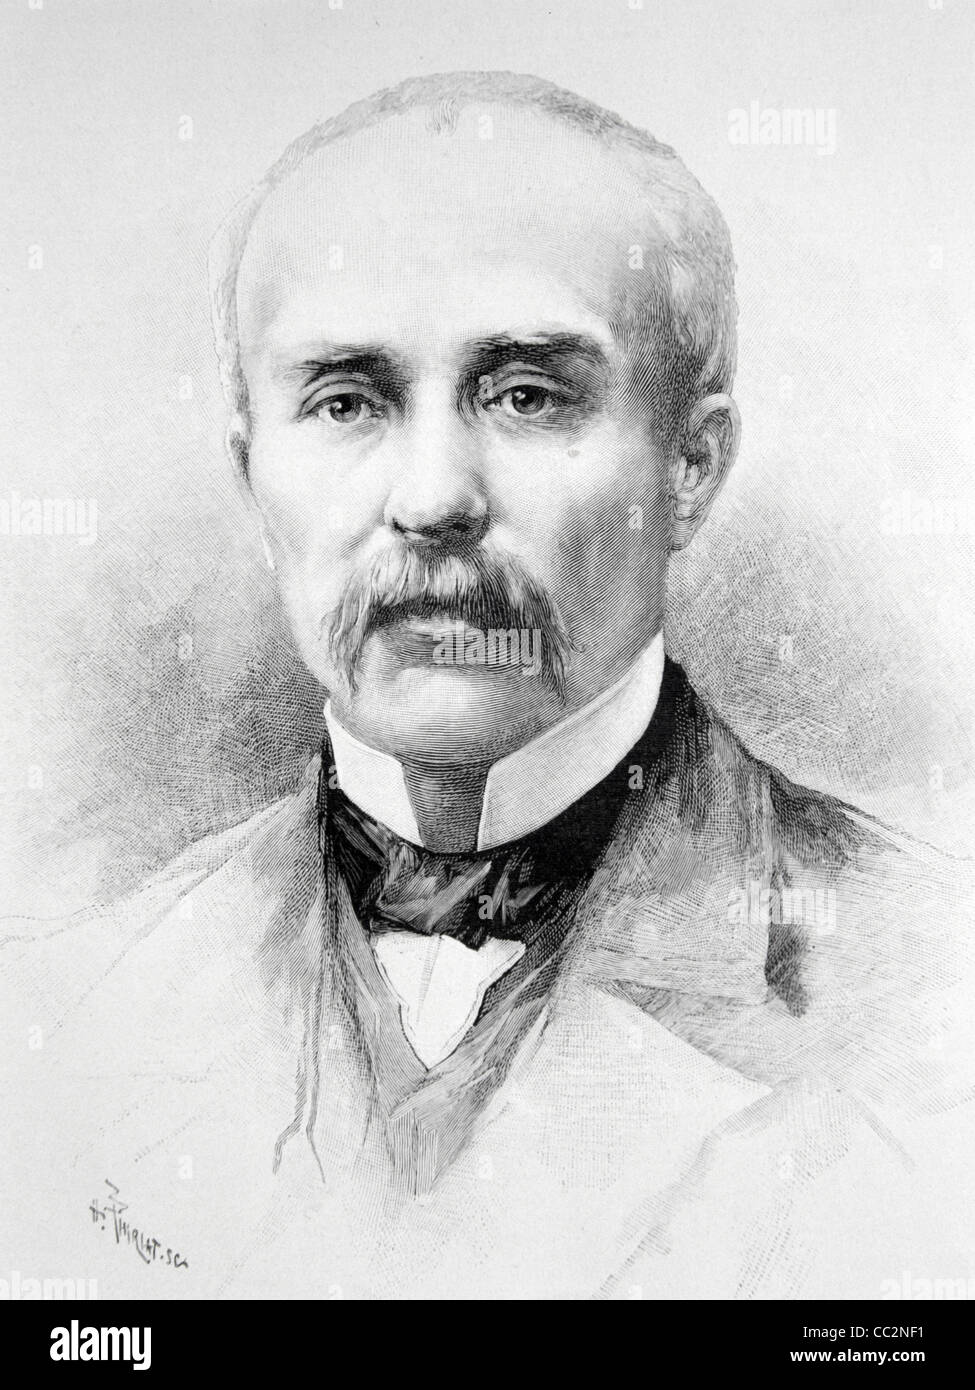 Portrait de Clemenceau, Georges Benjamin Clemenceau (1841-1929) journaliste, homme d'État et Premier ministre français, connu sous le nom de « le tigre ». Illustration ancienne ou gravure Banque D'Images